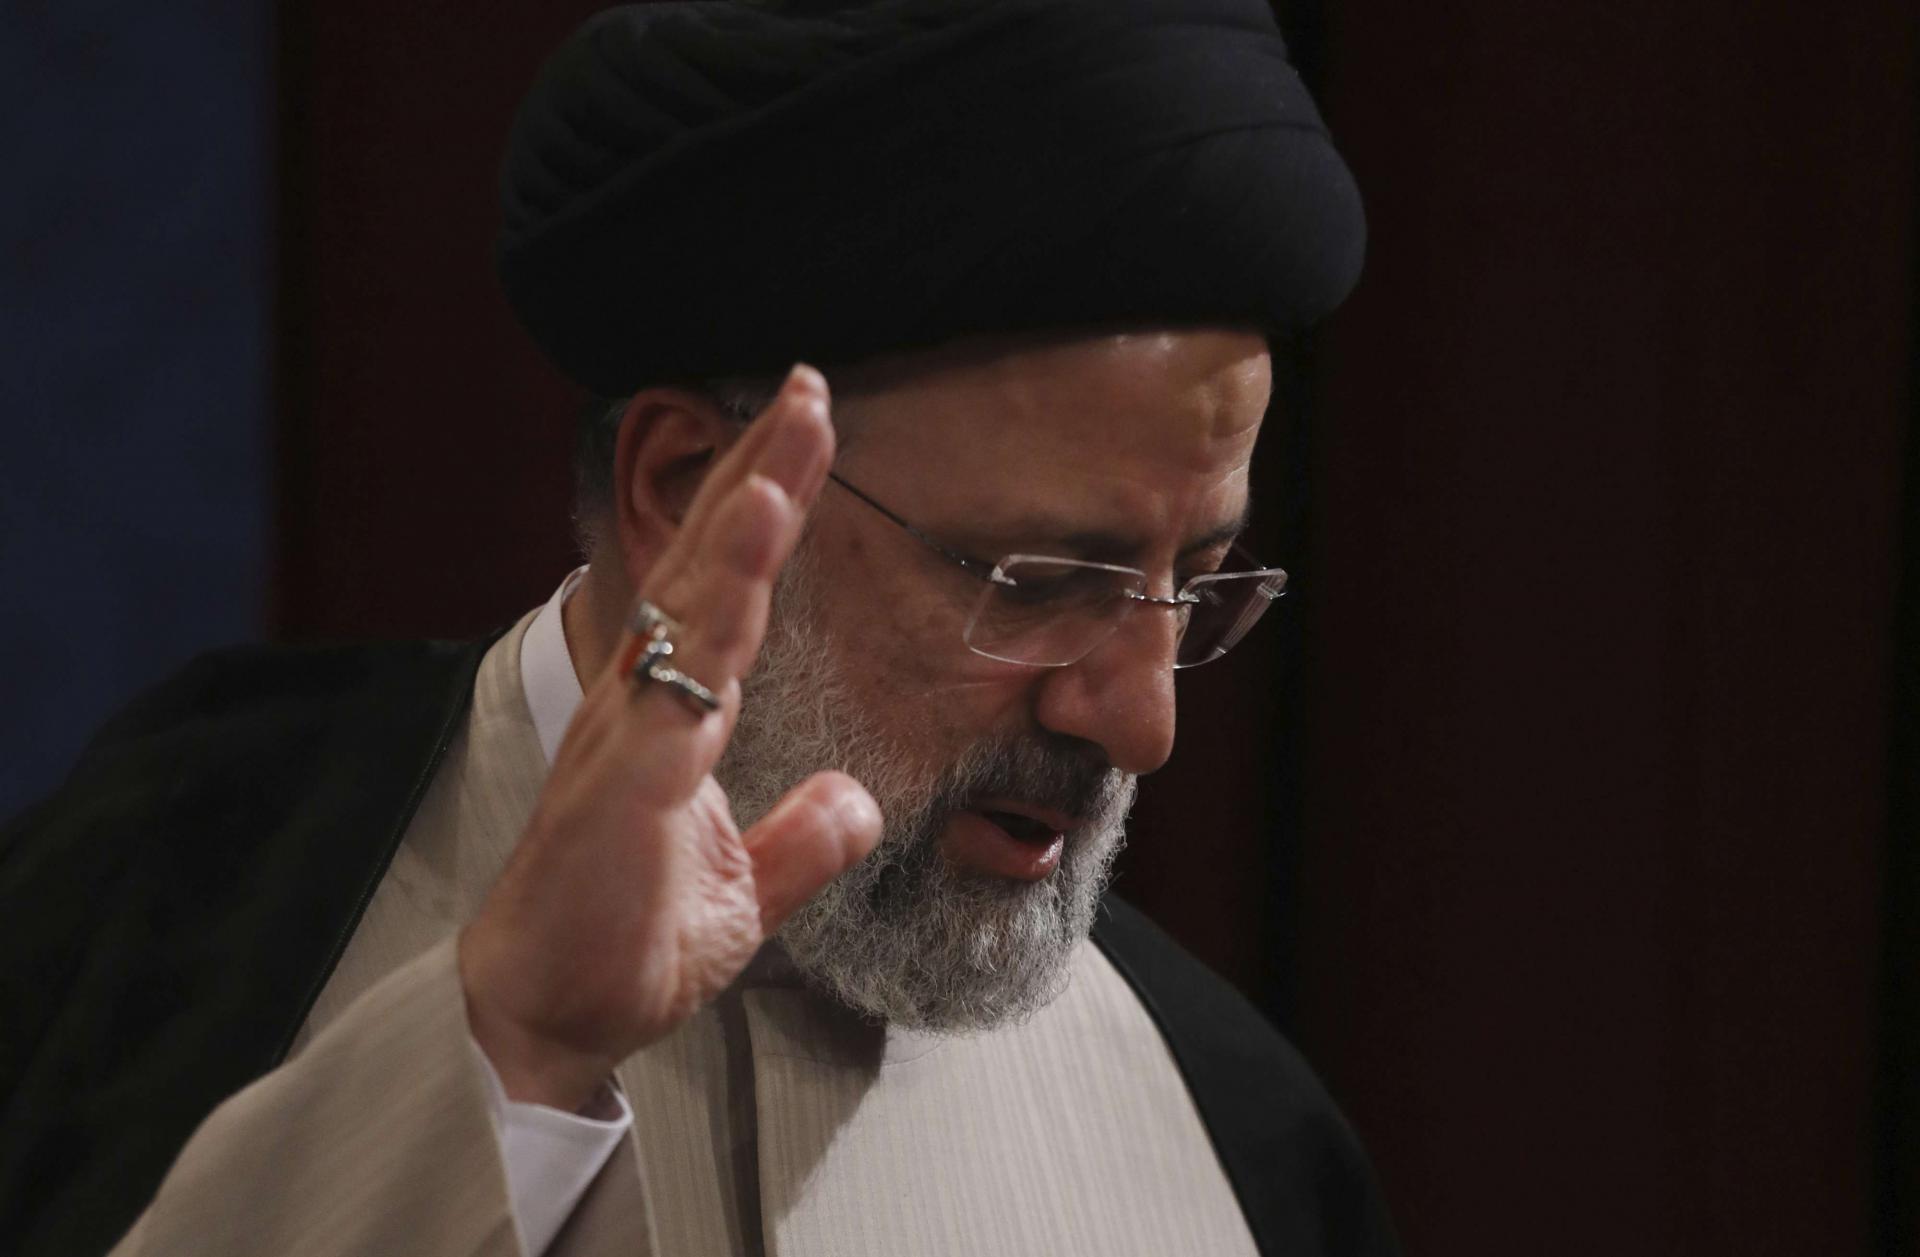 فوز رئيسي برئاسة إيران يشكل انعطافة أخرى في تاريخ الجمهورية الاسلامية الدموي